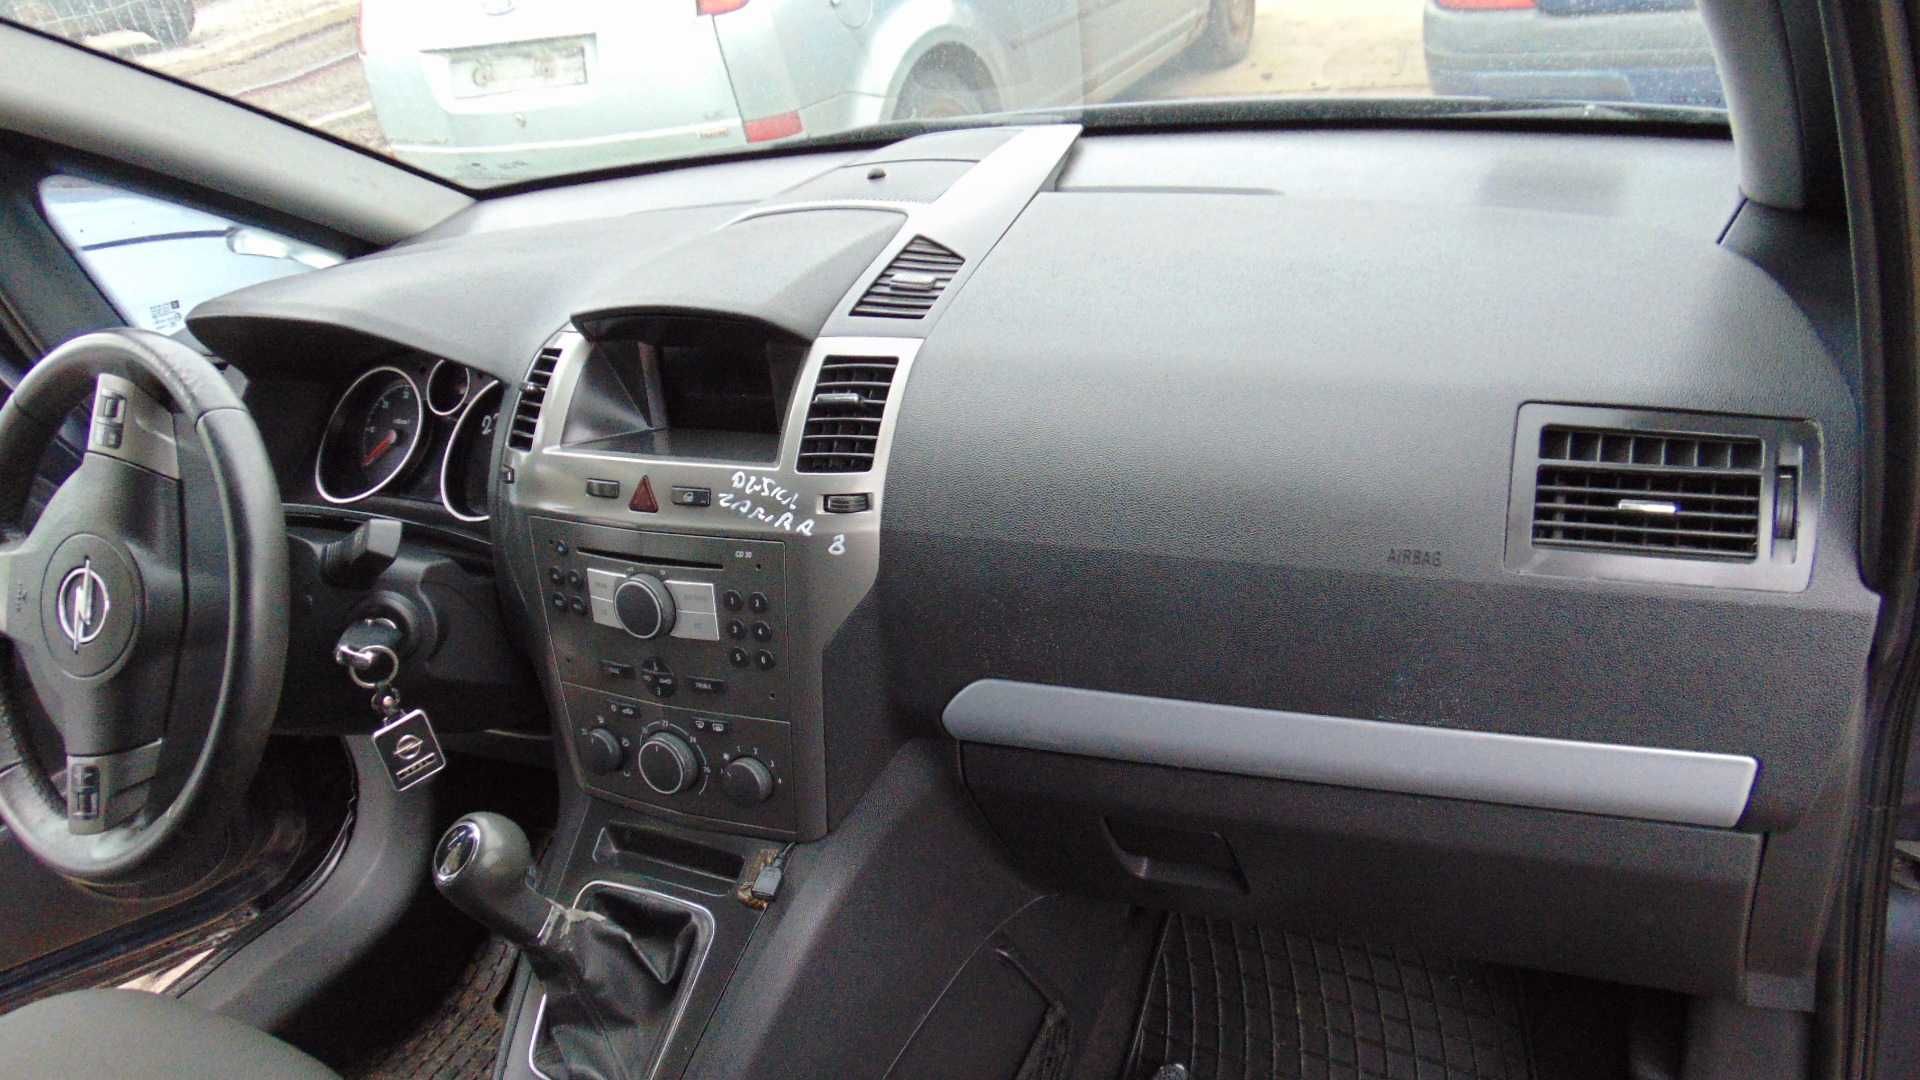 Lut4 Deska rozdzielcza kokpit airbag poduszki opel zafira B wysyłka